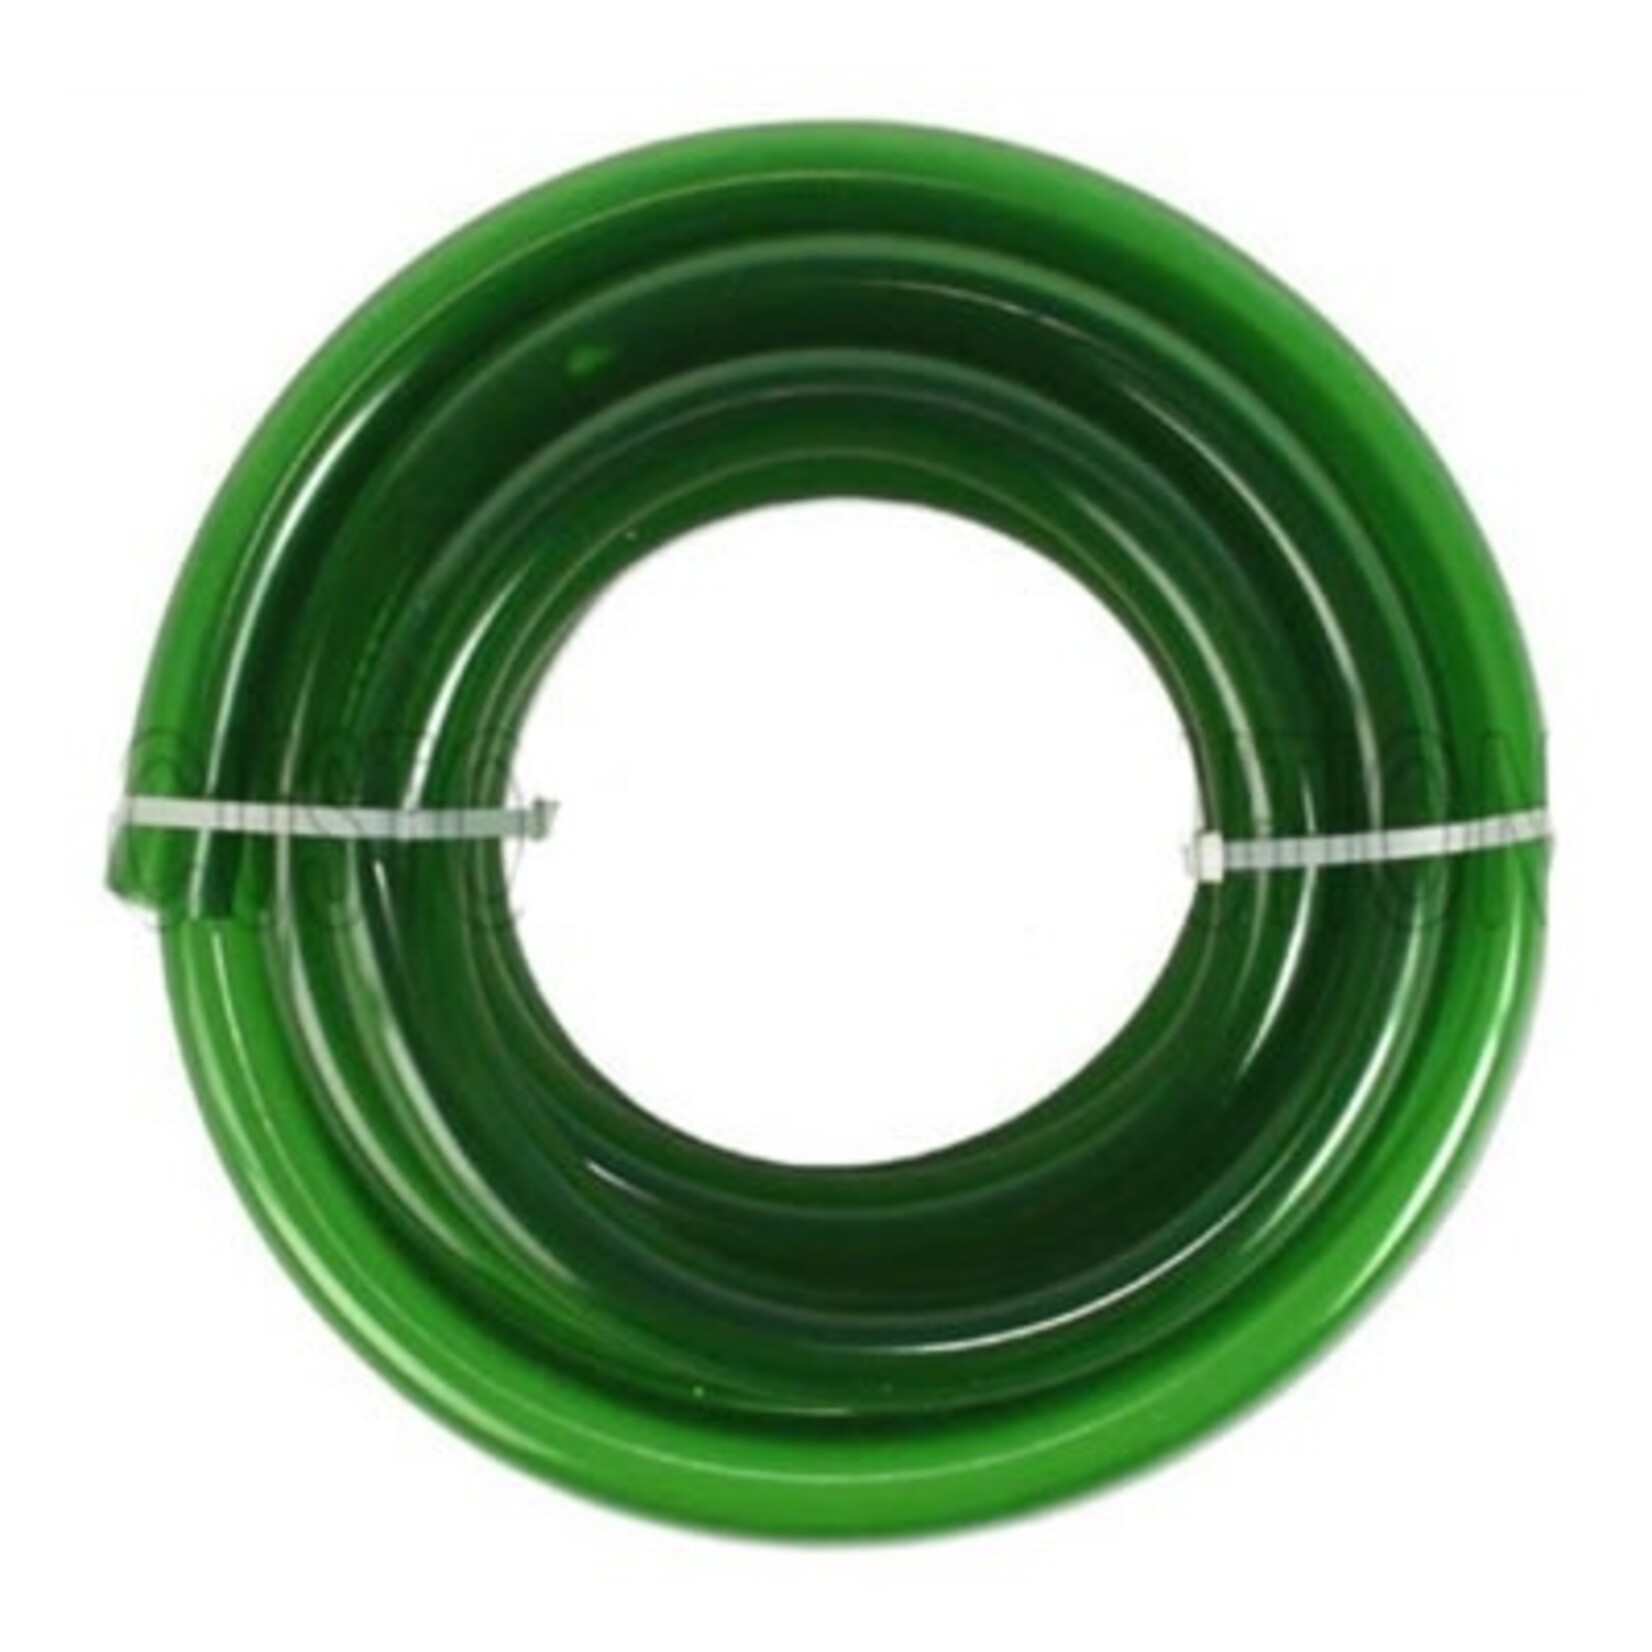 Eheim hose 9-12 per roll 70 meters